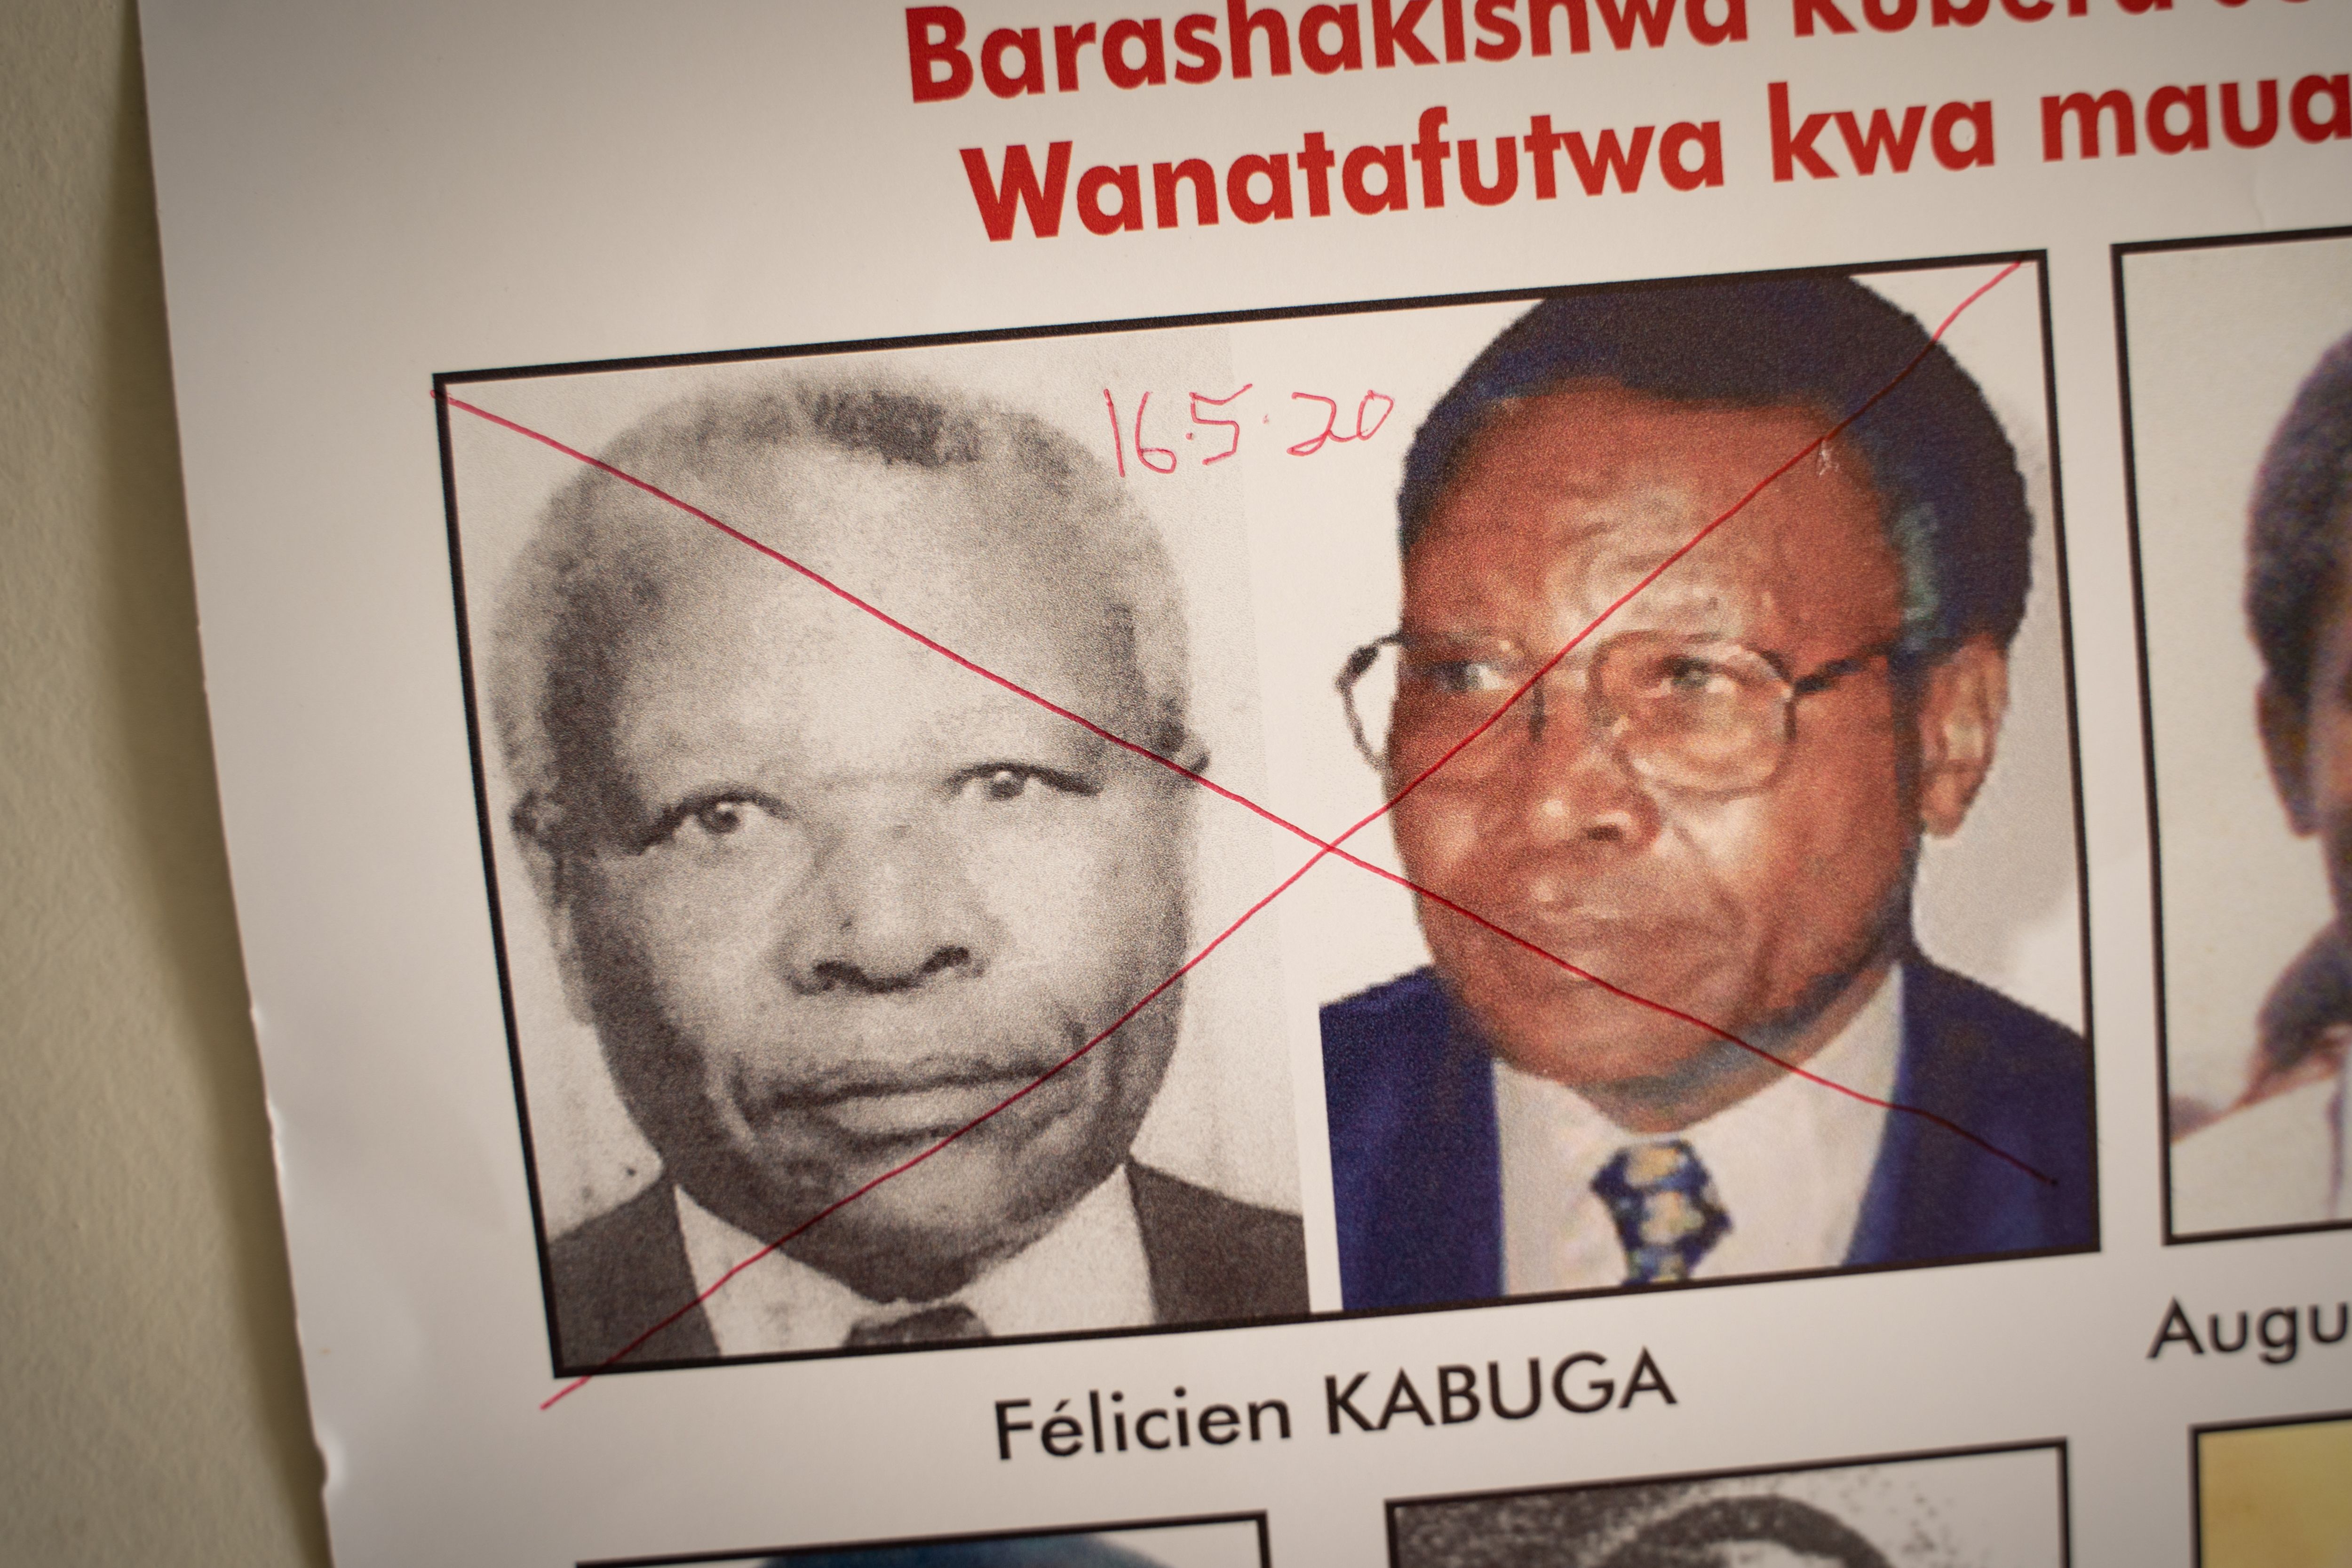 Felicien Kabuga wanted poster